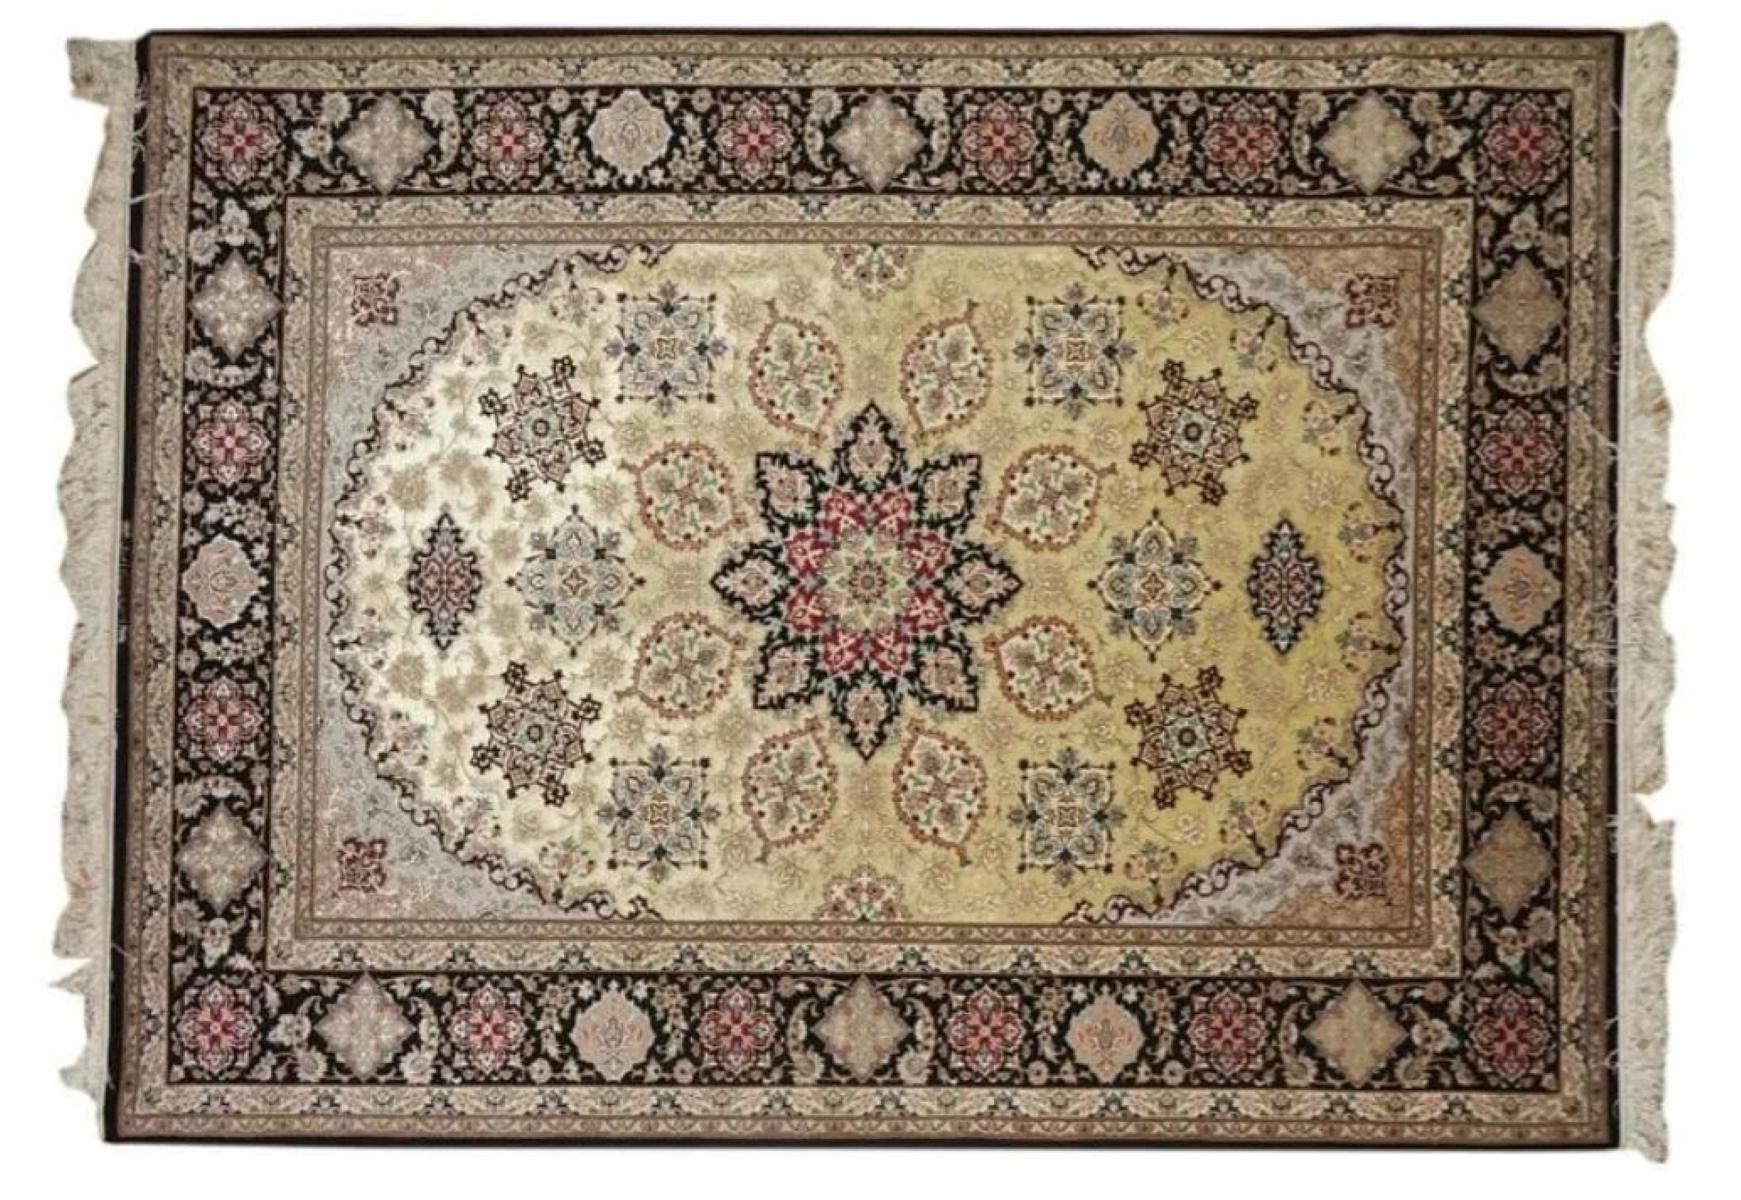 Très beau tapis persan d'Ispahan en soie et laine - 7,8' x 5'